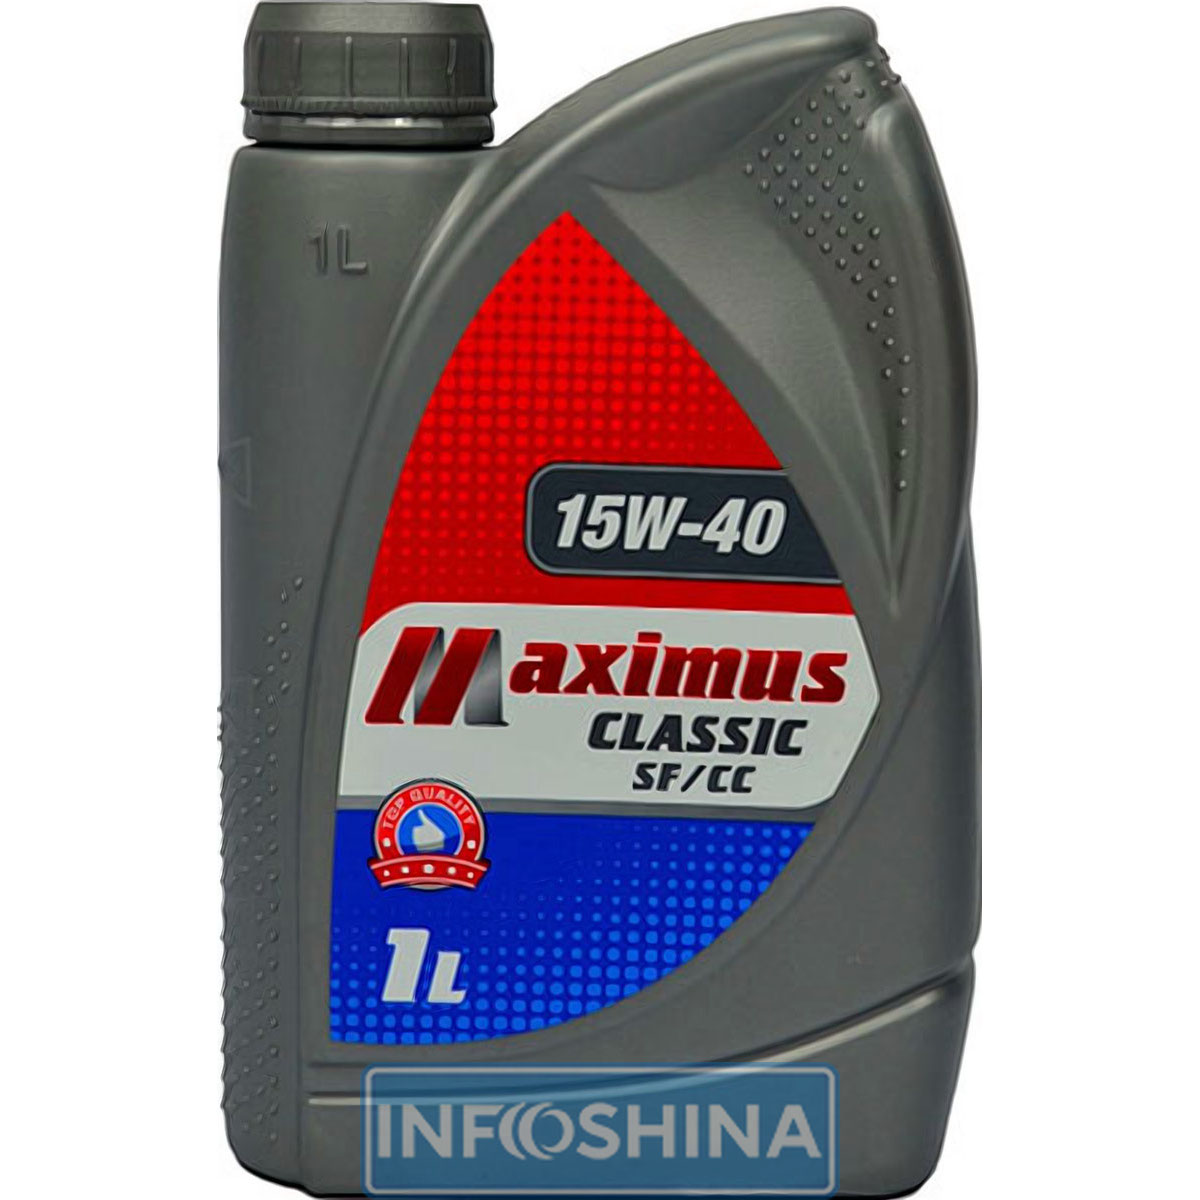 Maximus Classic SF-CC 15W-40